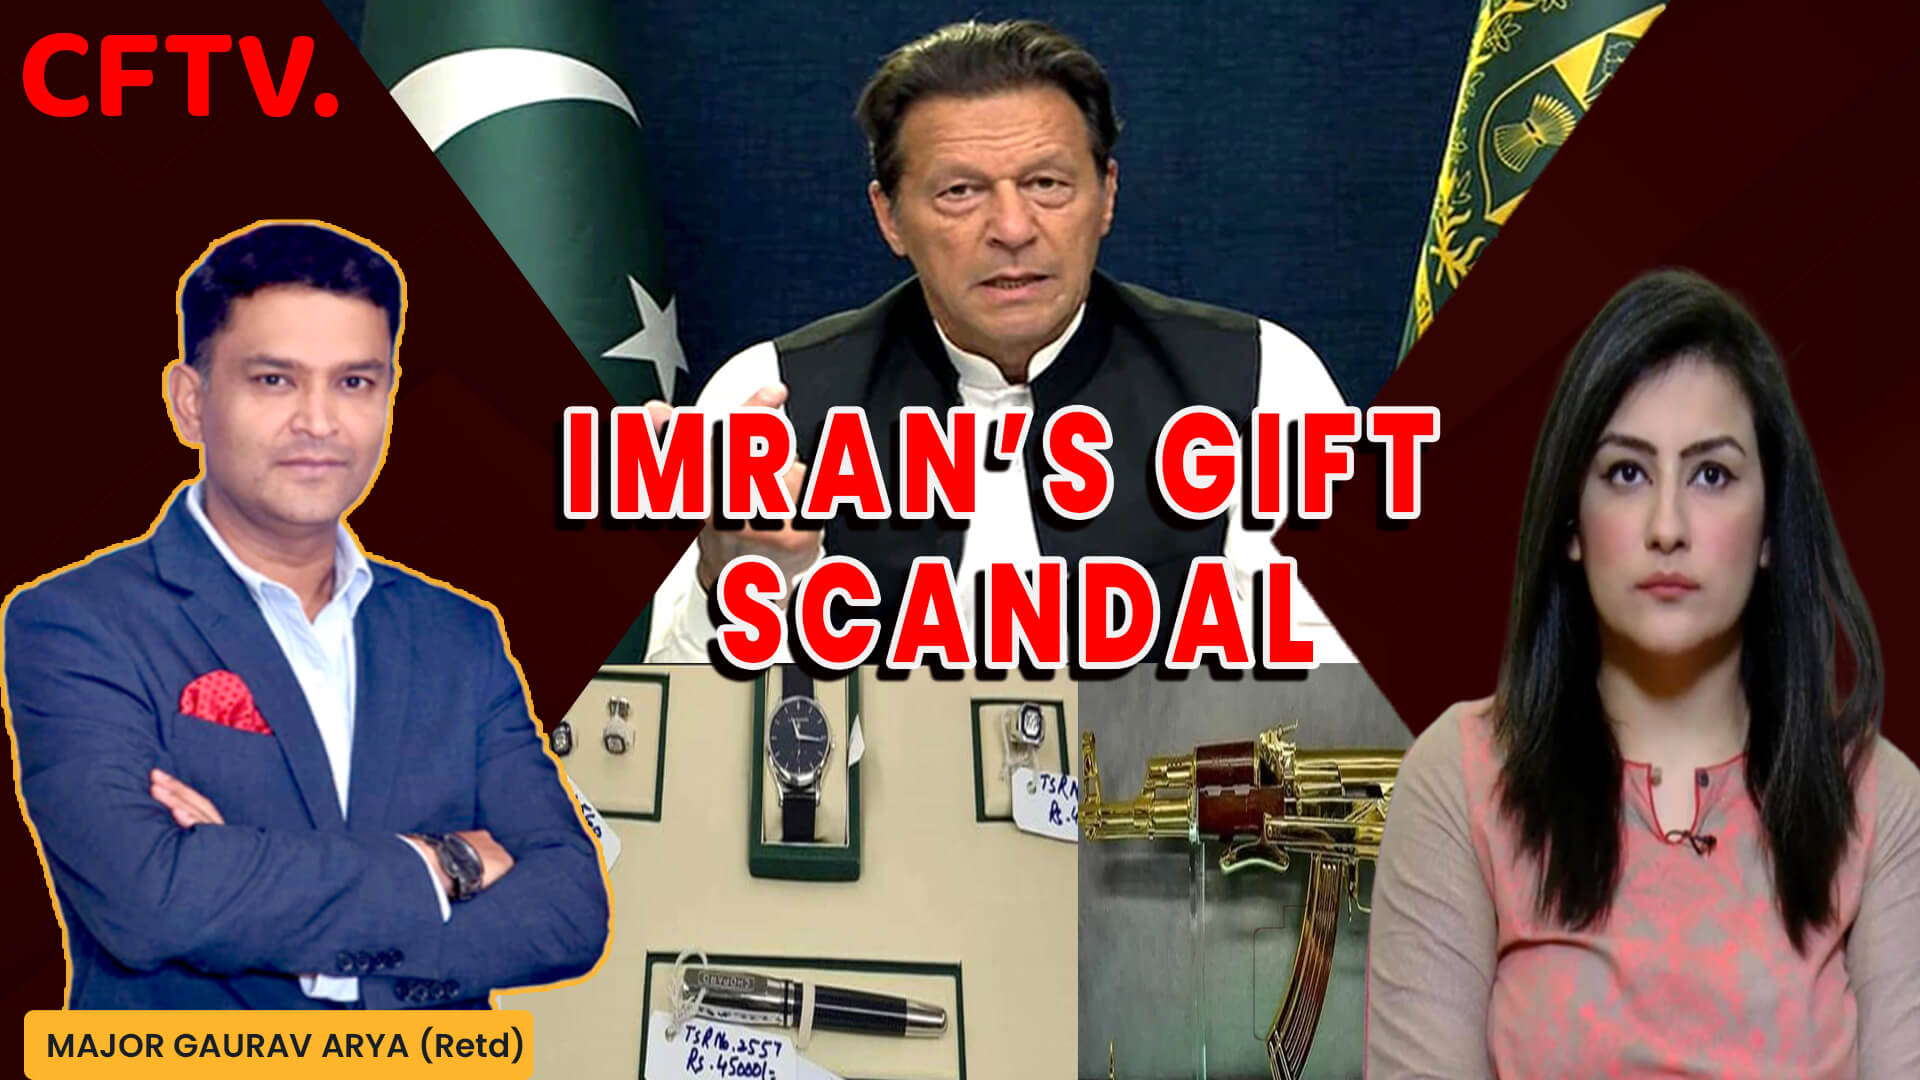 Imran’s Gift Scandal